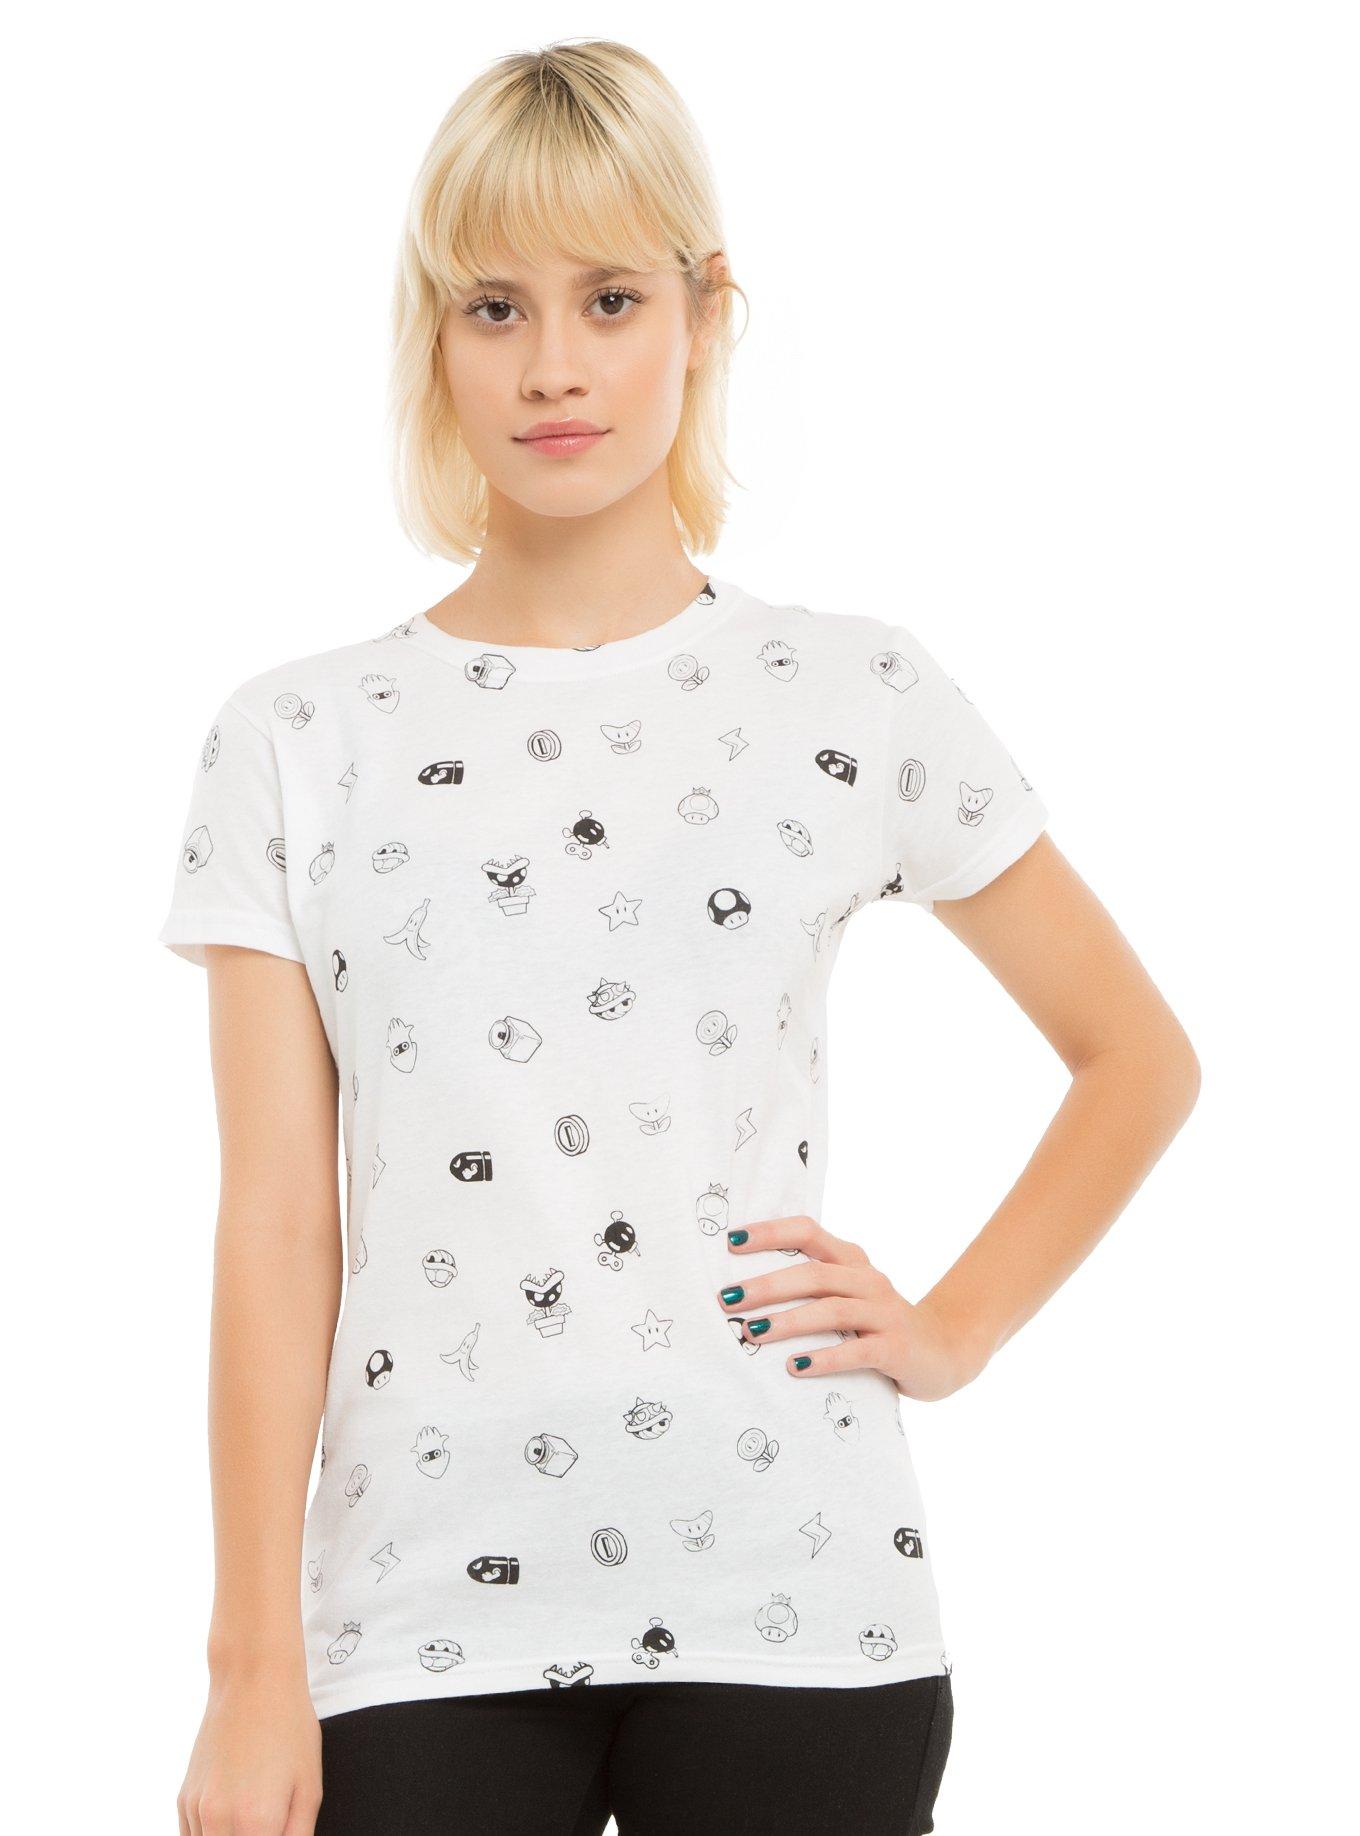 Mario Kart Icons Girls T-Shirt | Hot Topic